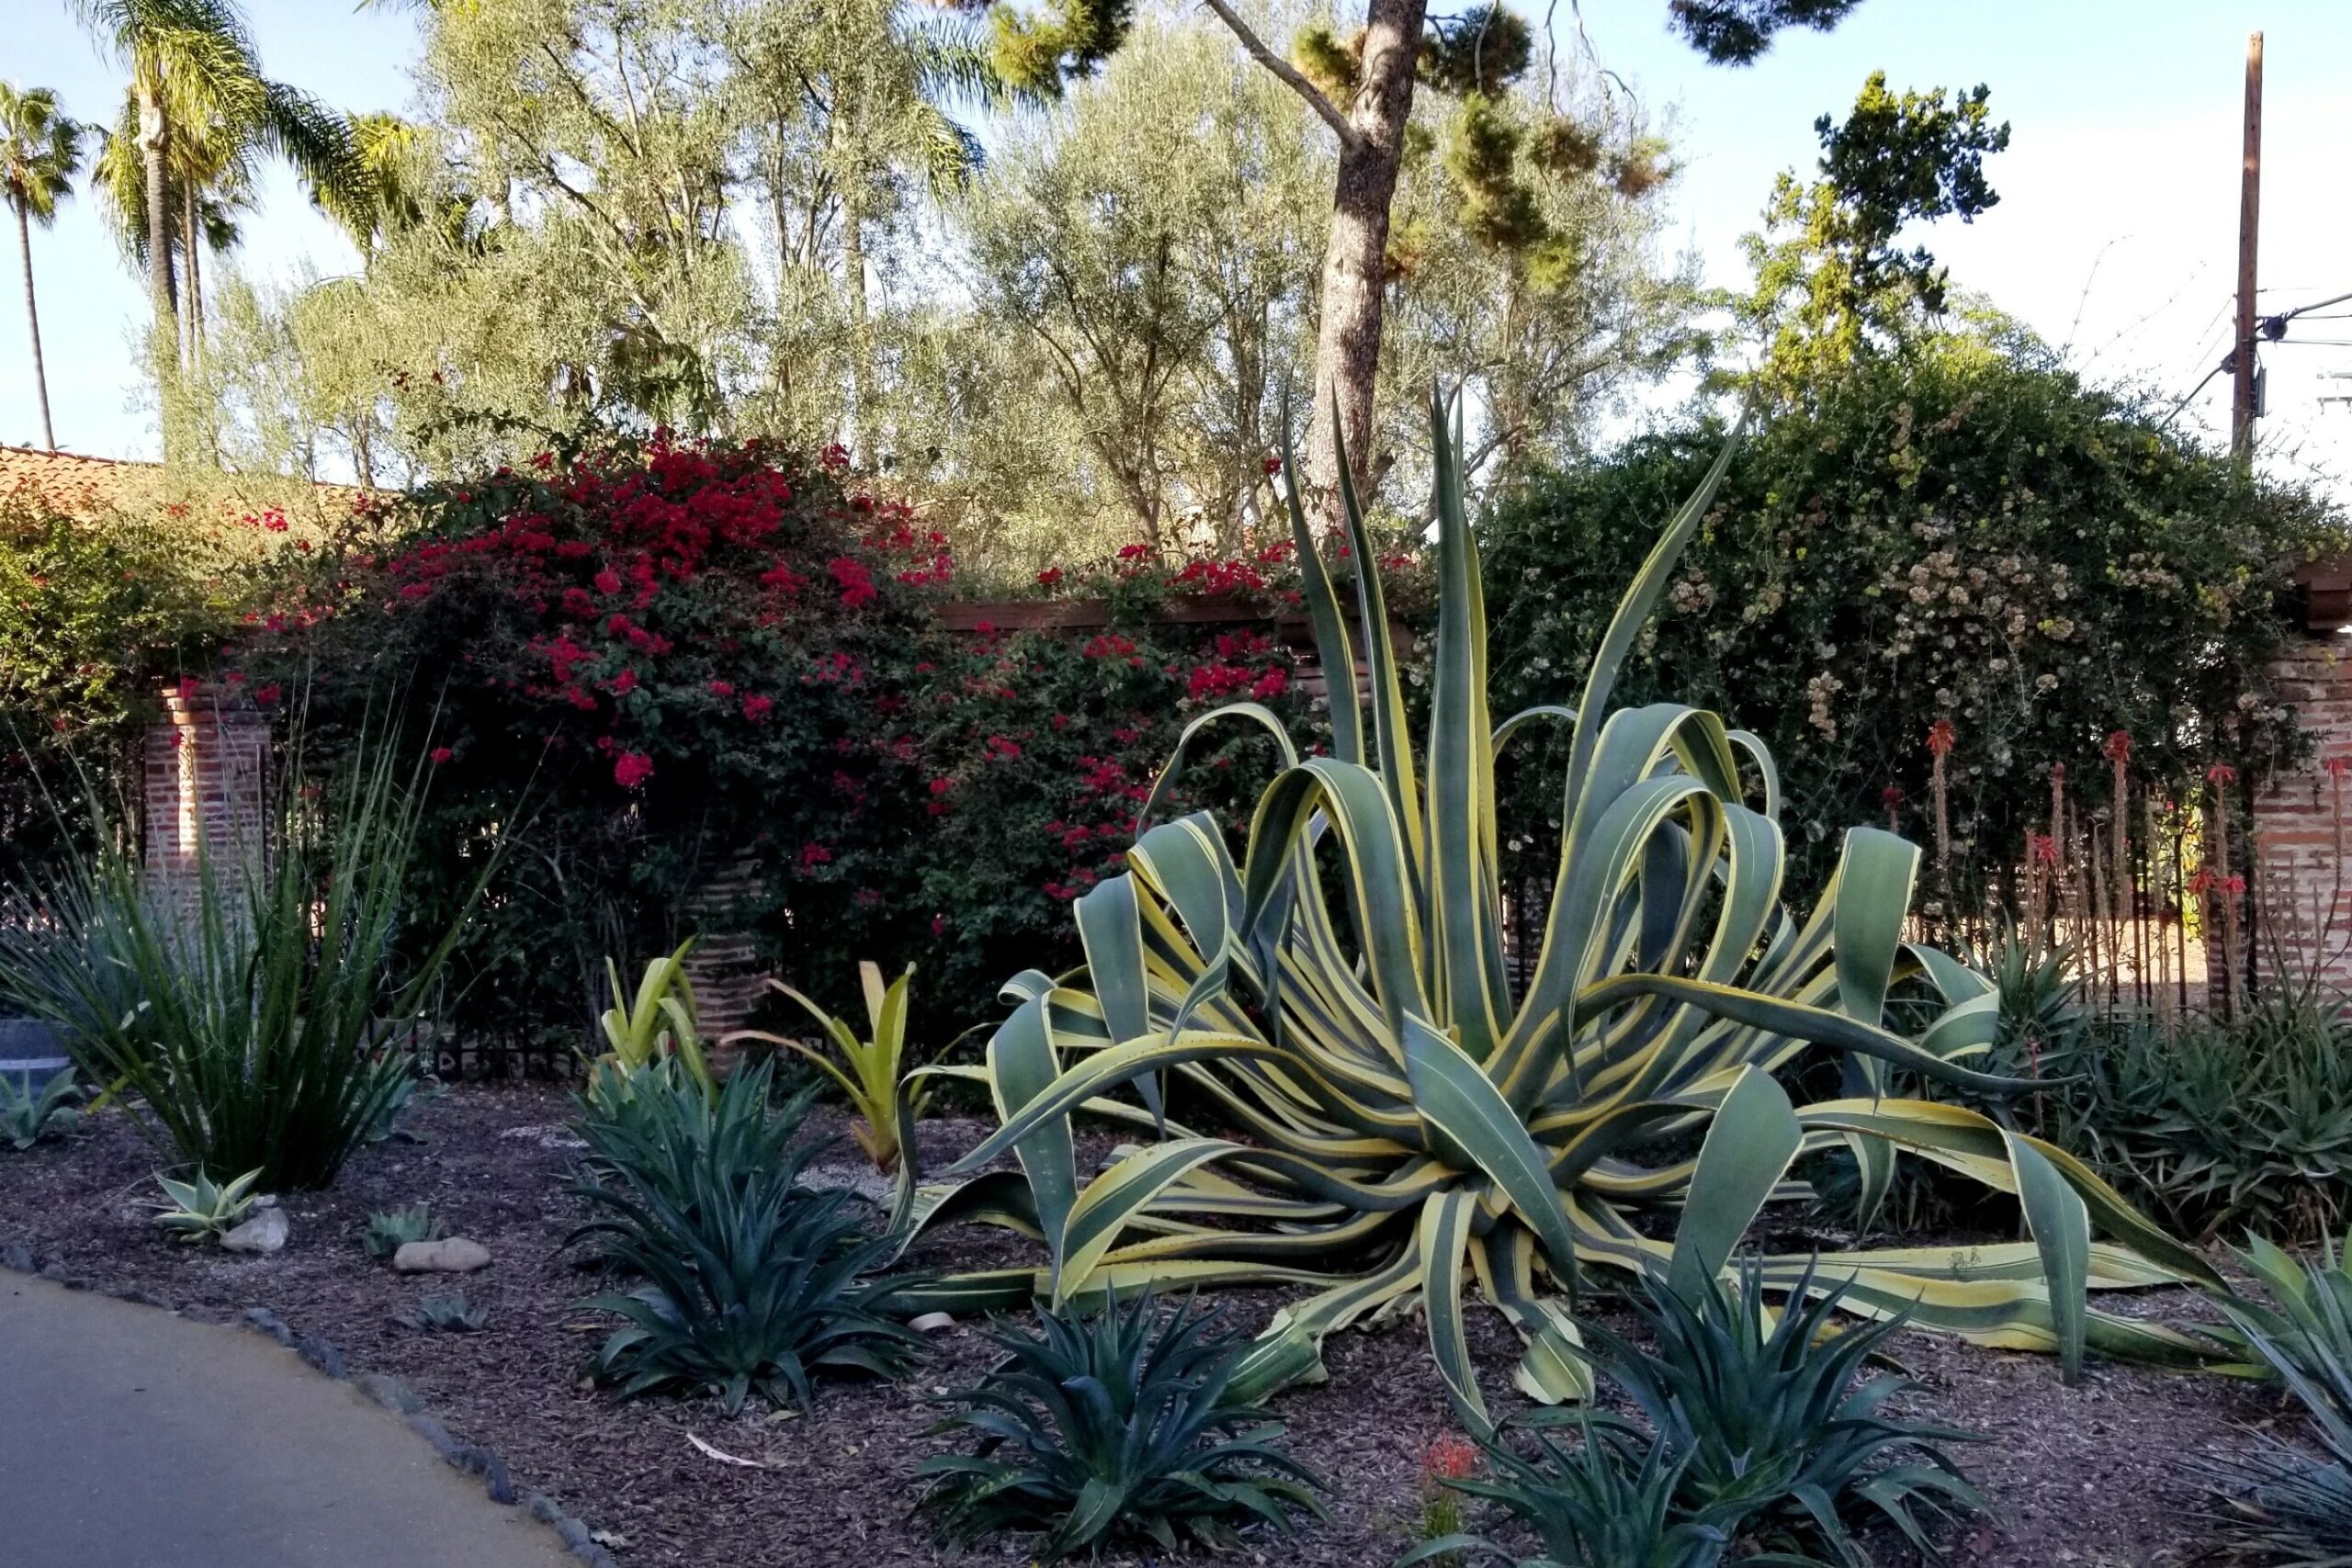 Plants at the Fullerton Arboretum in Anaheim, California